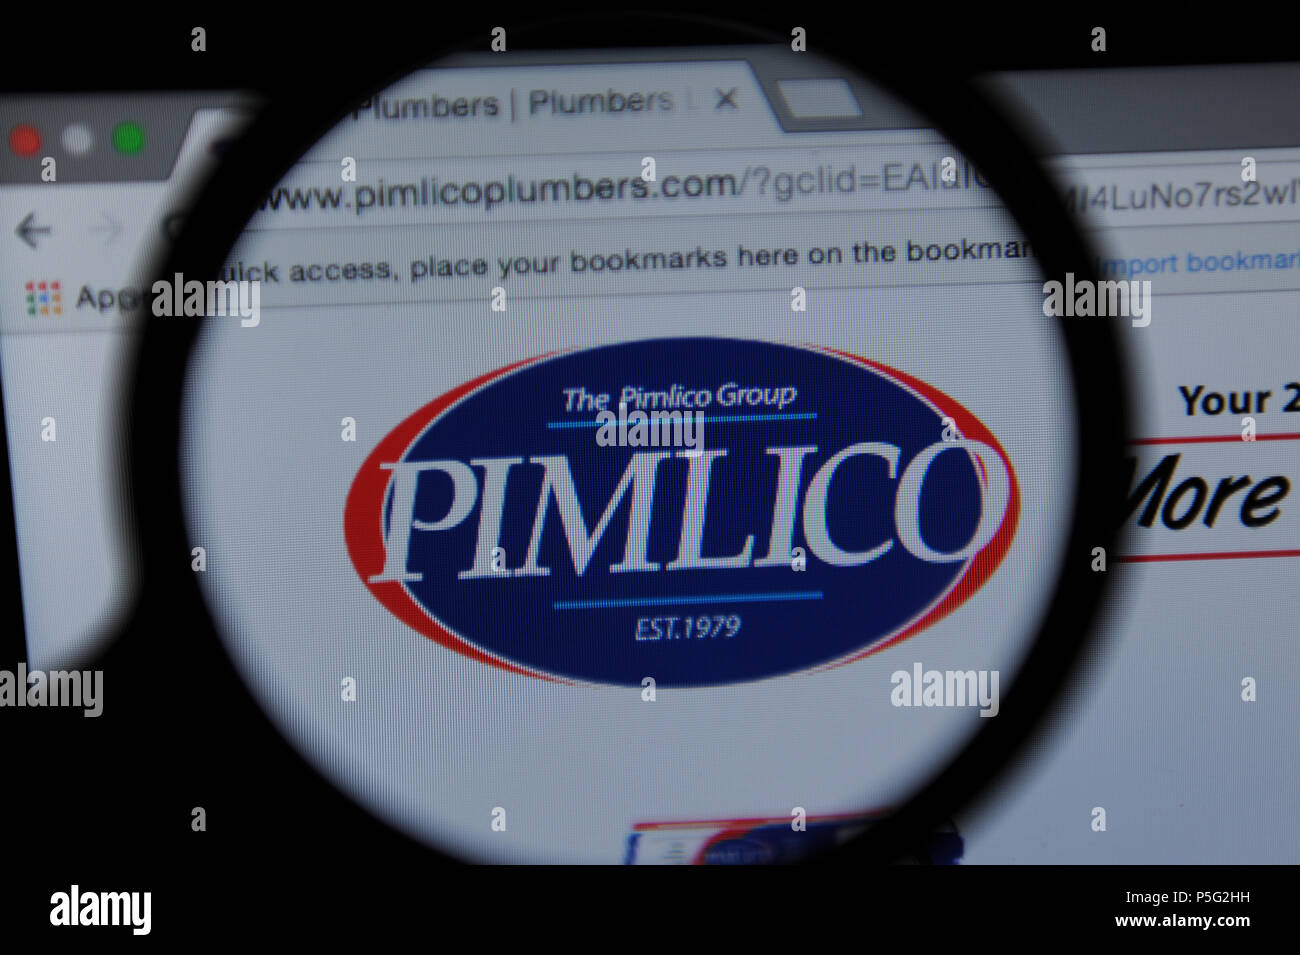 Pimlico plumbers Stock Photo